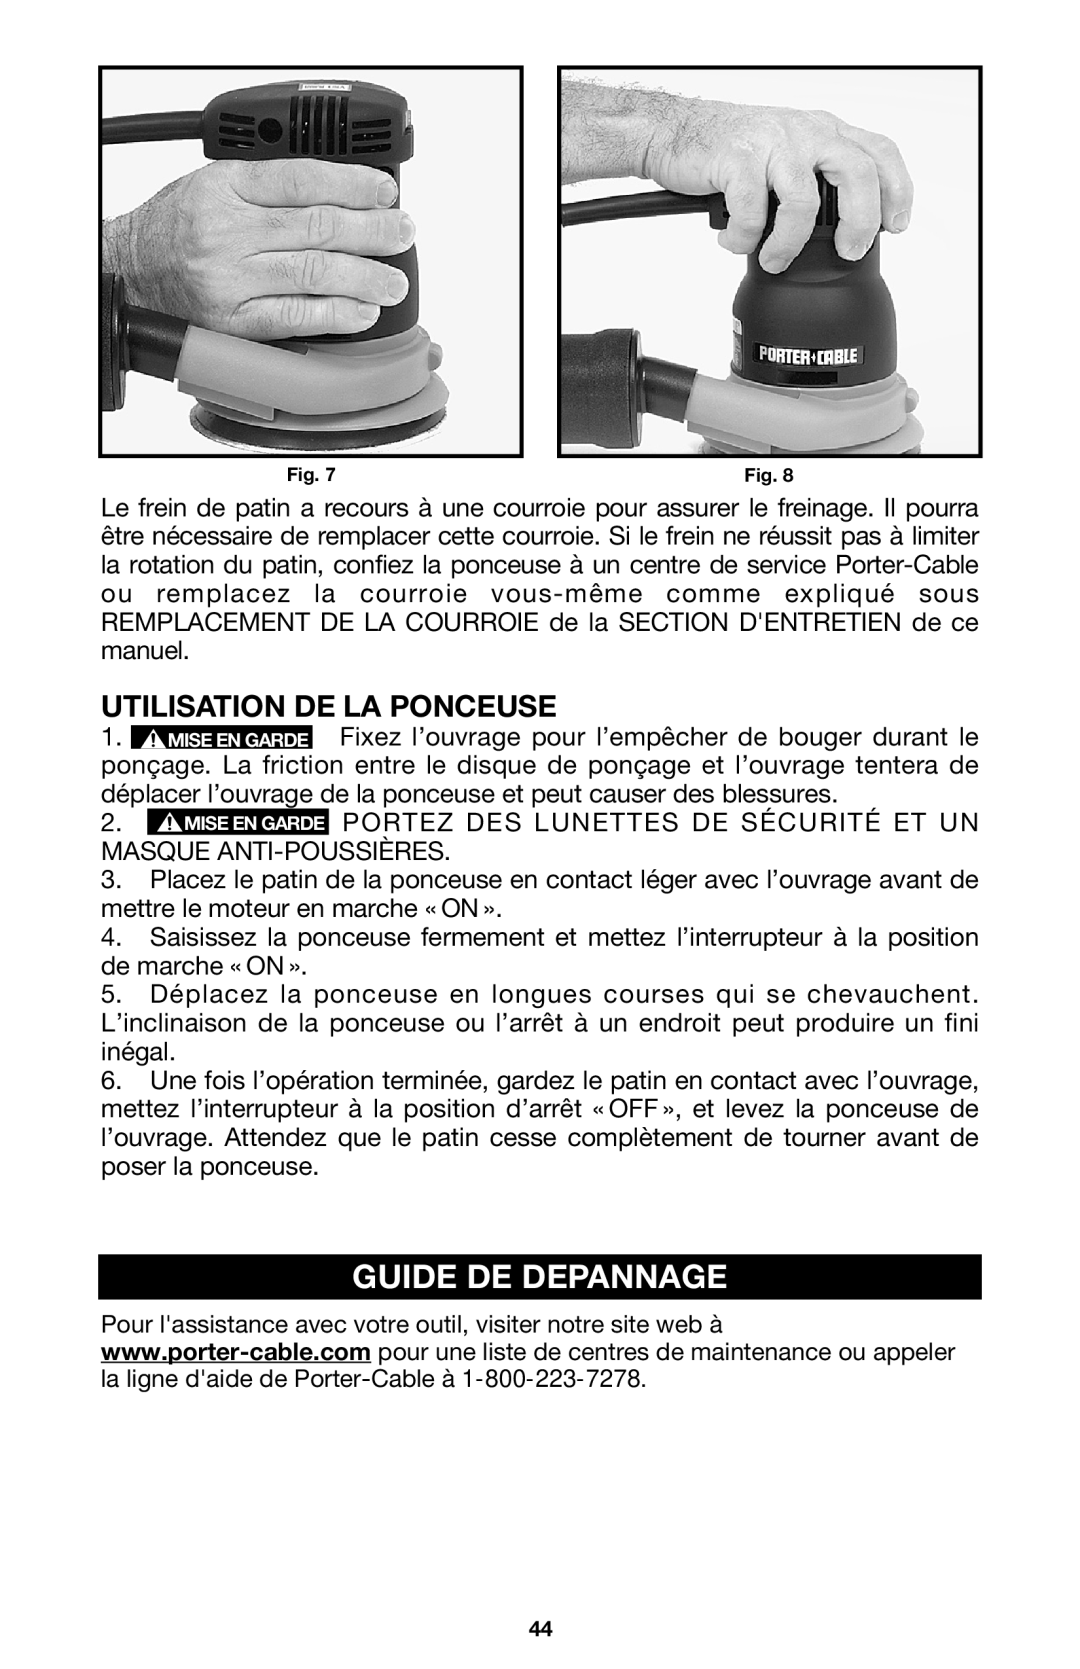 Porter-Cable 333VS instruction manual Guide De Depannage, Utilisation De La Ponceuse 